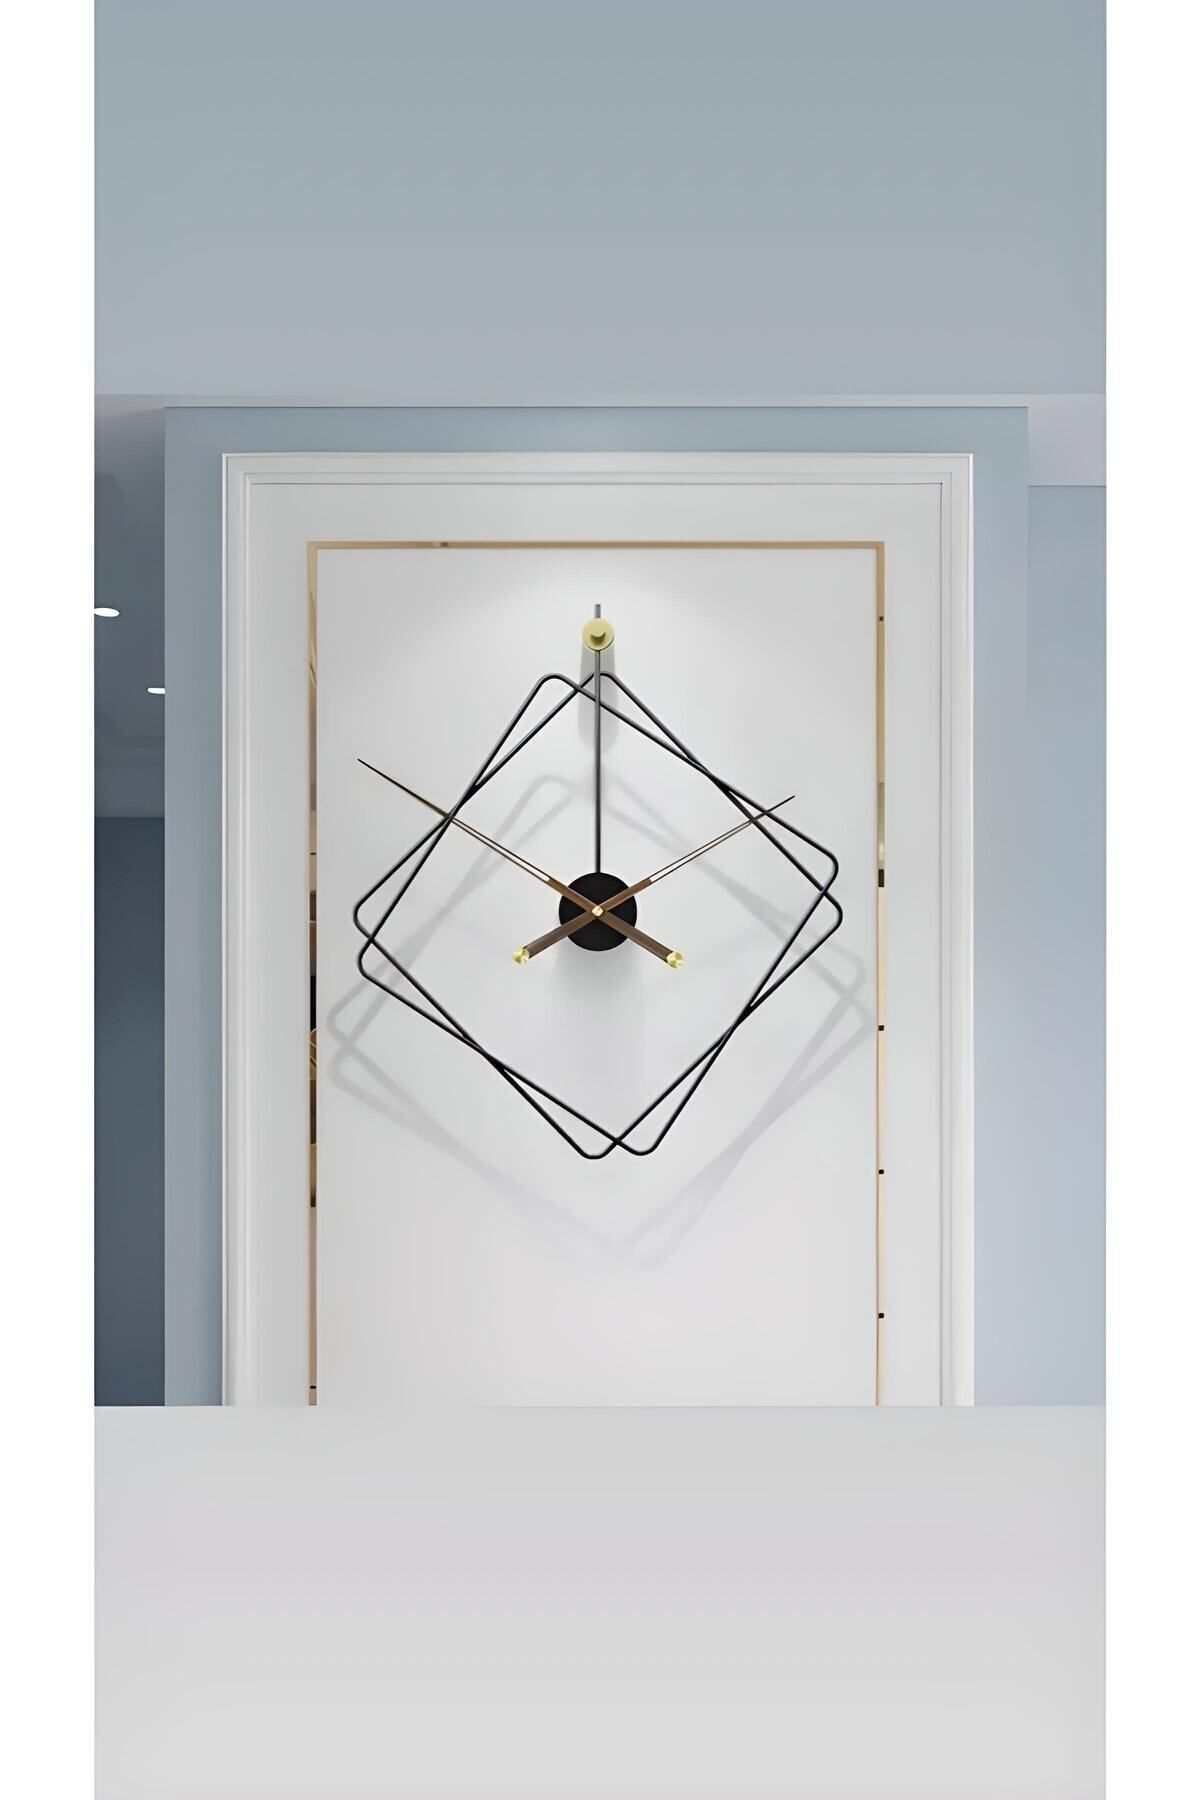 MetaQuartz Aksesuar Ferrero Clock Metal Duvar Saati, Modern Dekoratif Metal Duvar Saati